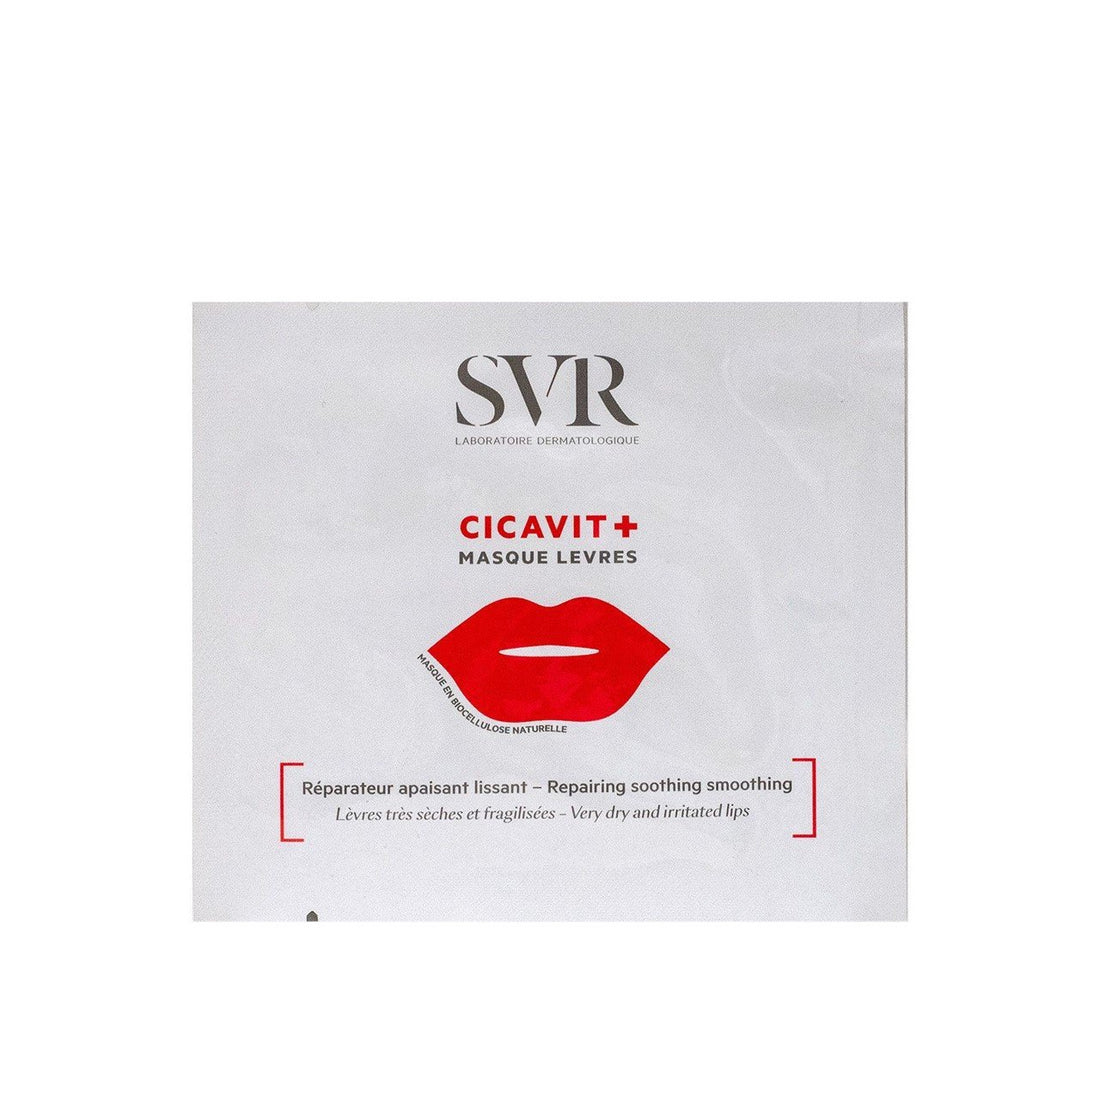 SVR Cicavit+ Máscara Labial 5ml - 6 unidades de 5ml